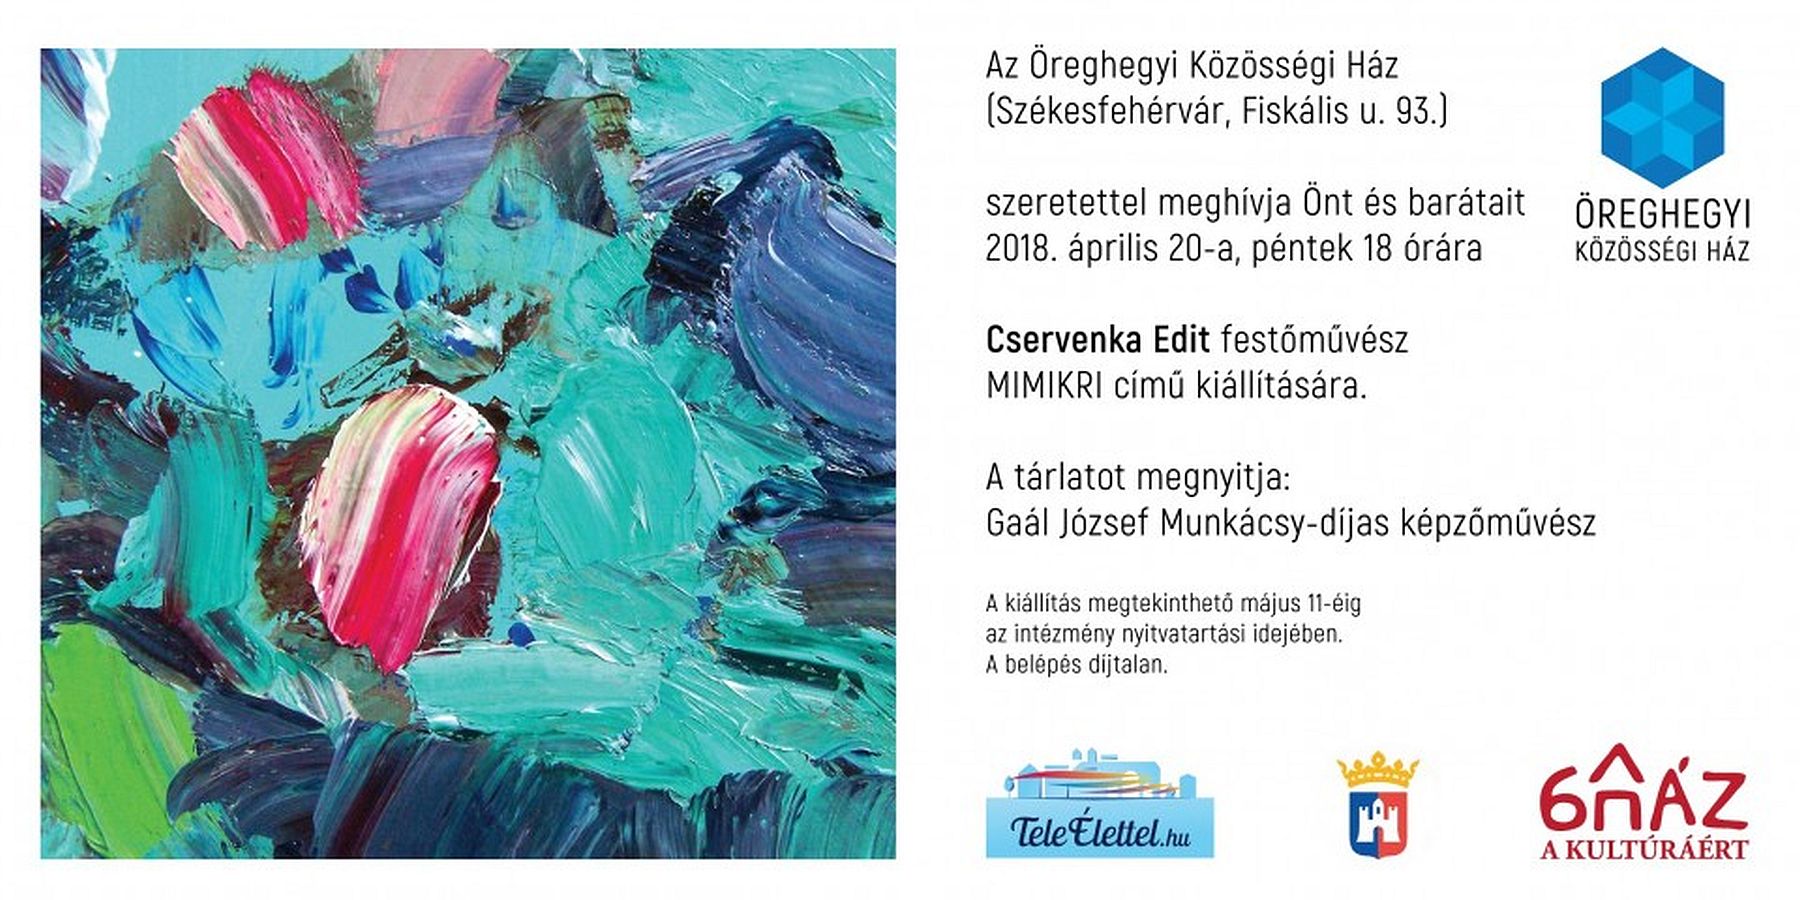 Cservenka Edit, festőművész kiállításának megnyitója az Öreghegyi Közösségi Házban